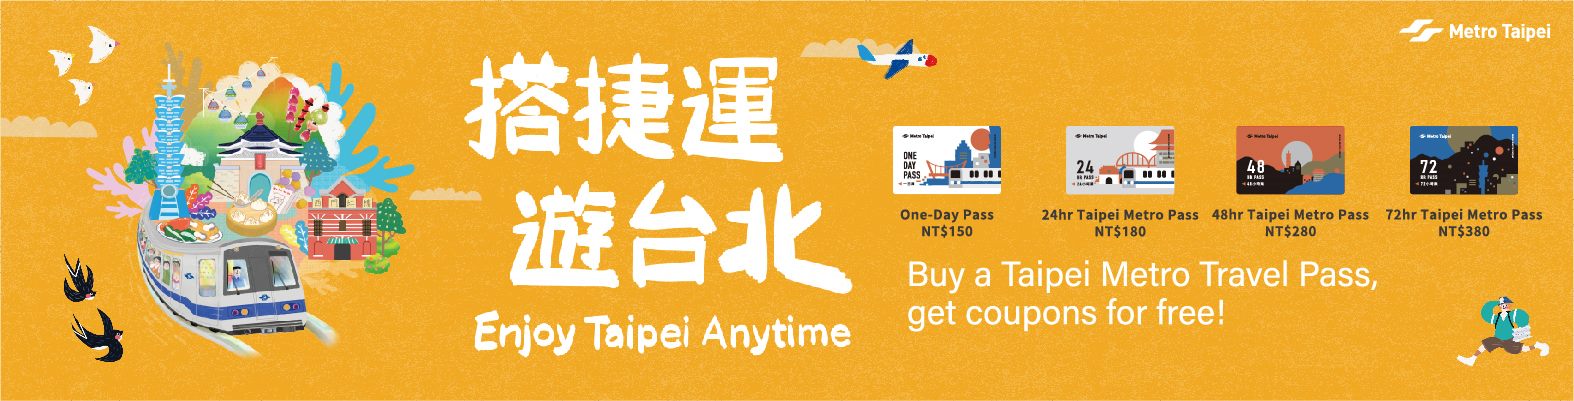 Taipei Anytime